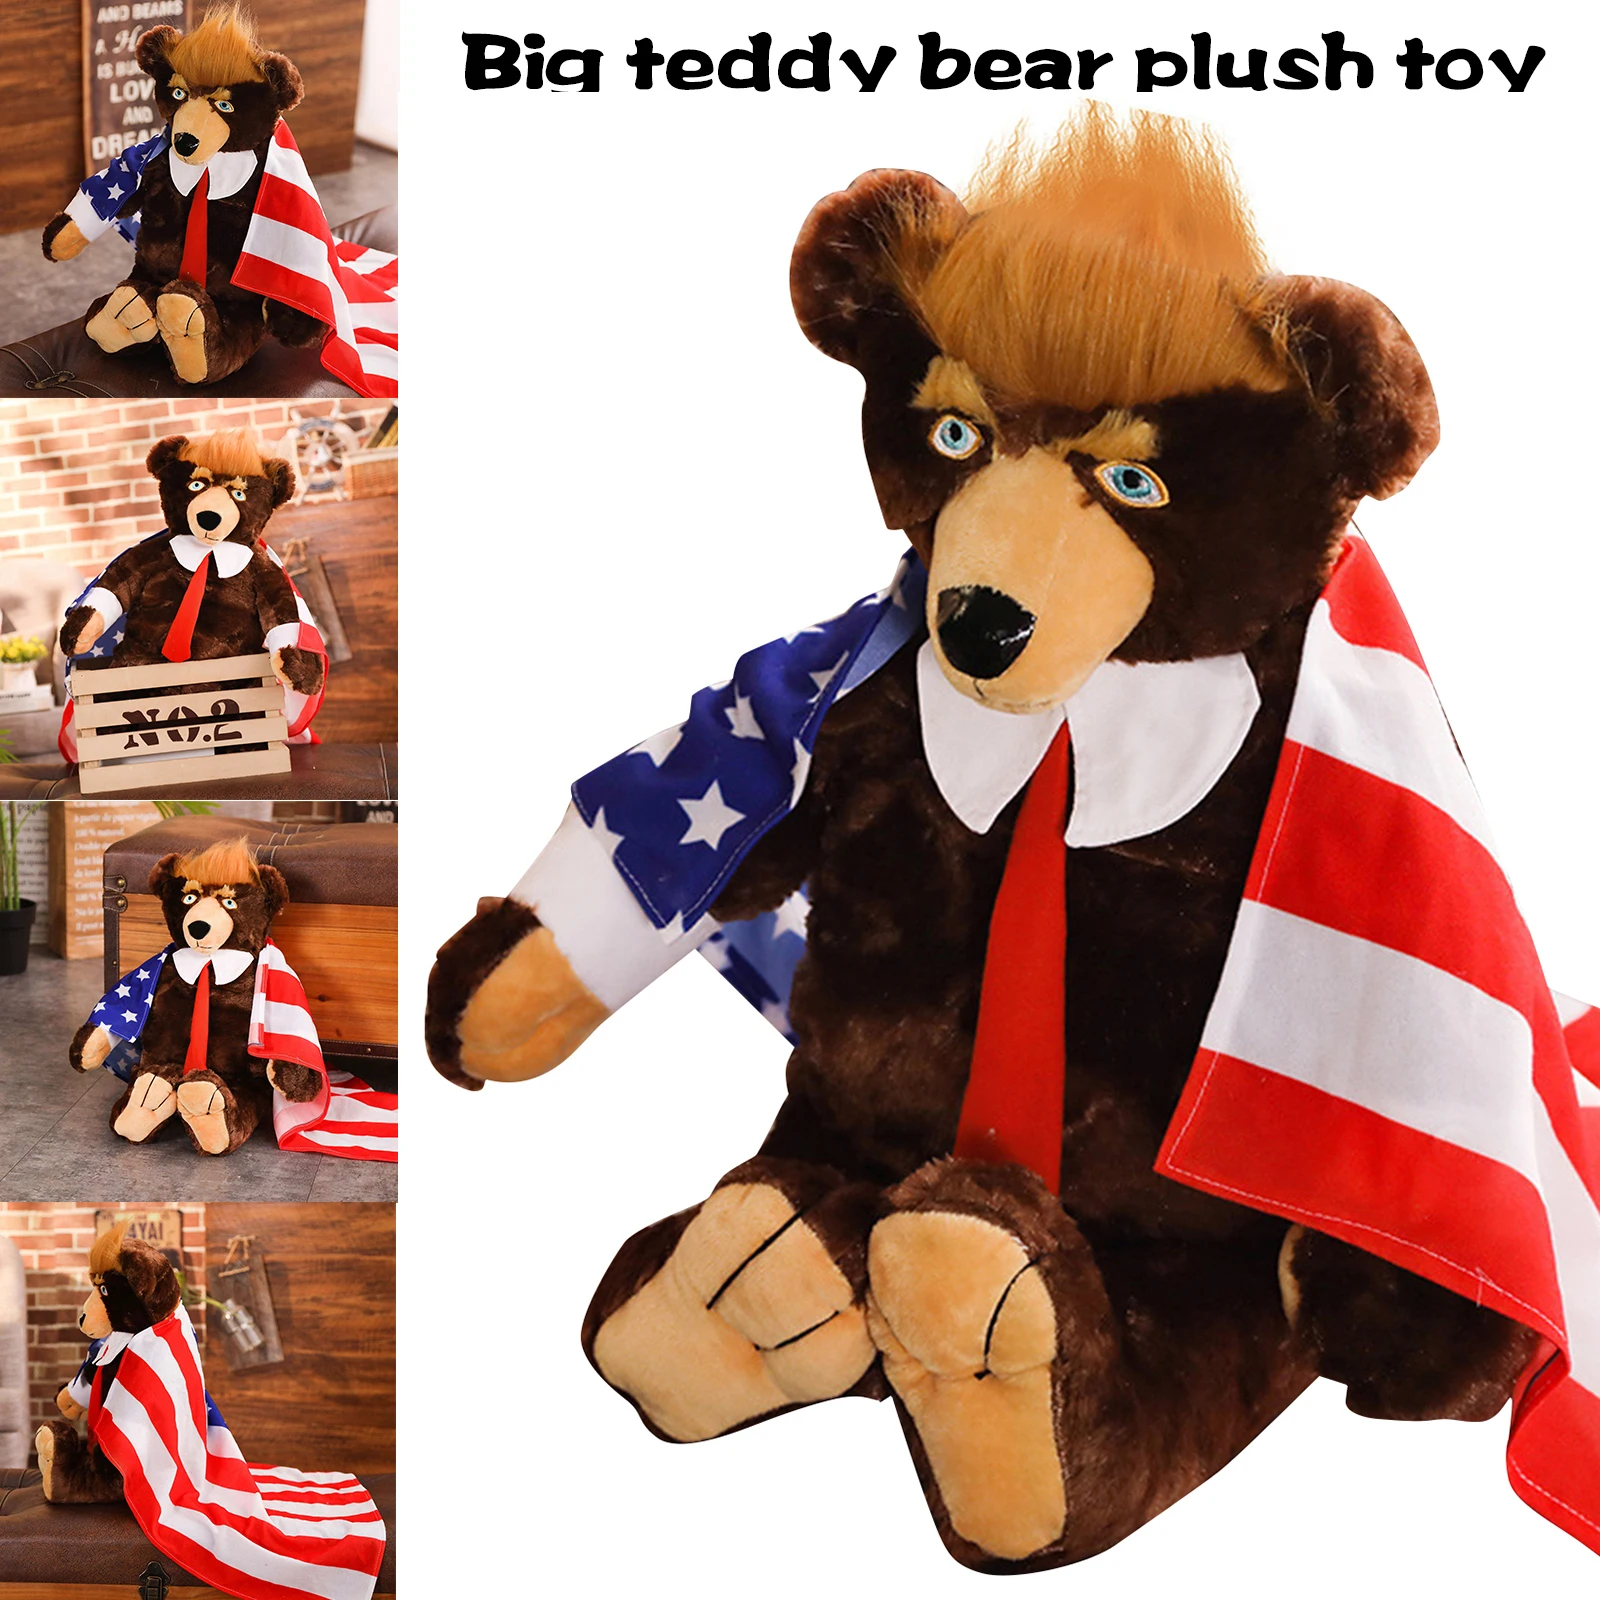 

62 см Дональд Трамп медведь плюшевые игрушки в форме чучело игрушки Прохладный президент США медведь с флагом плащ коллекция кукла LKS99